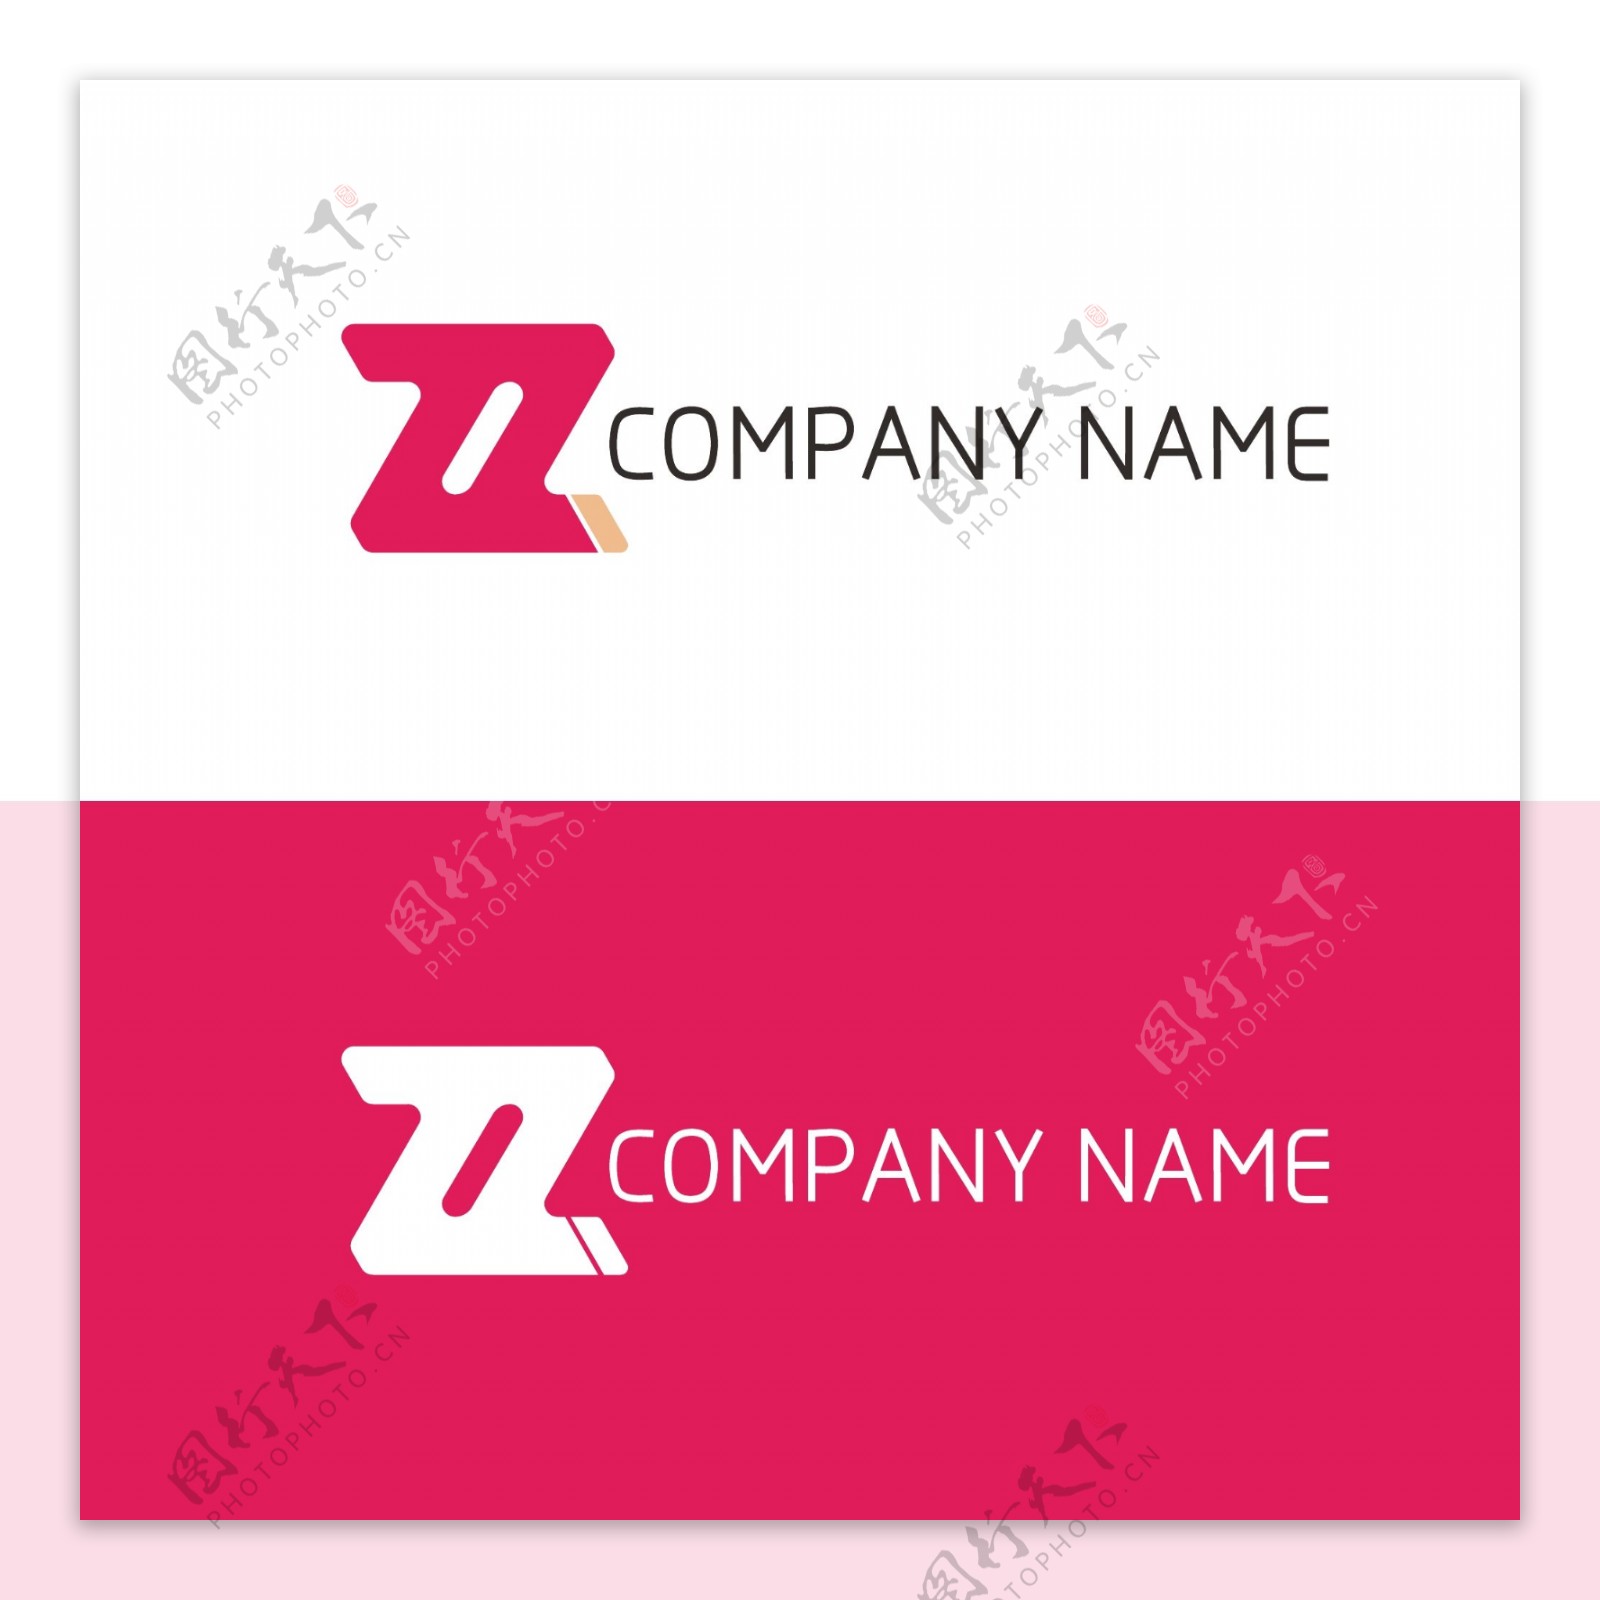 字母商标logo设计